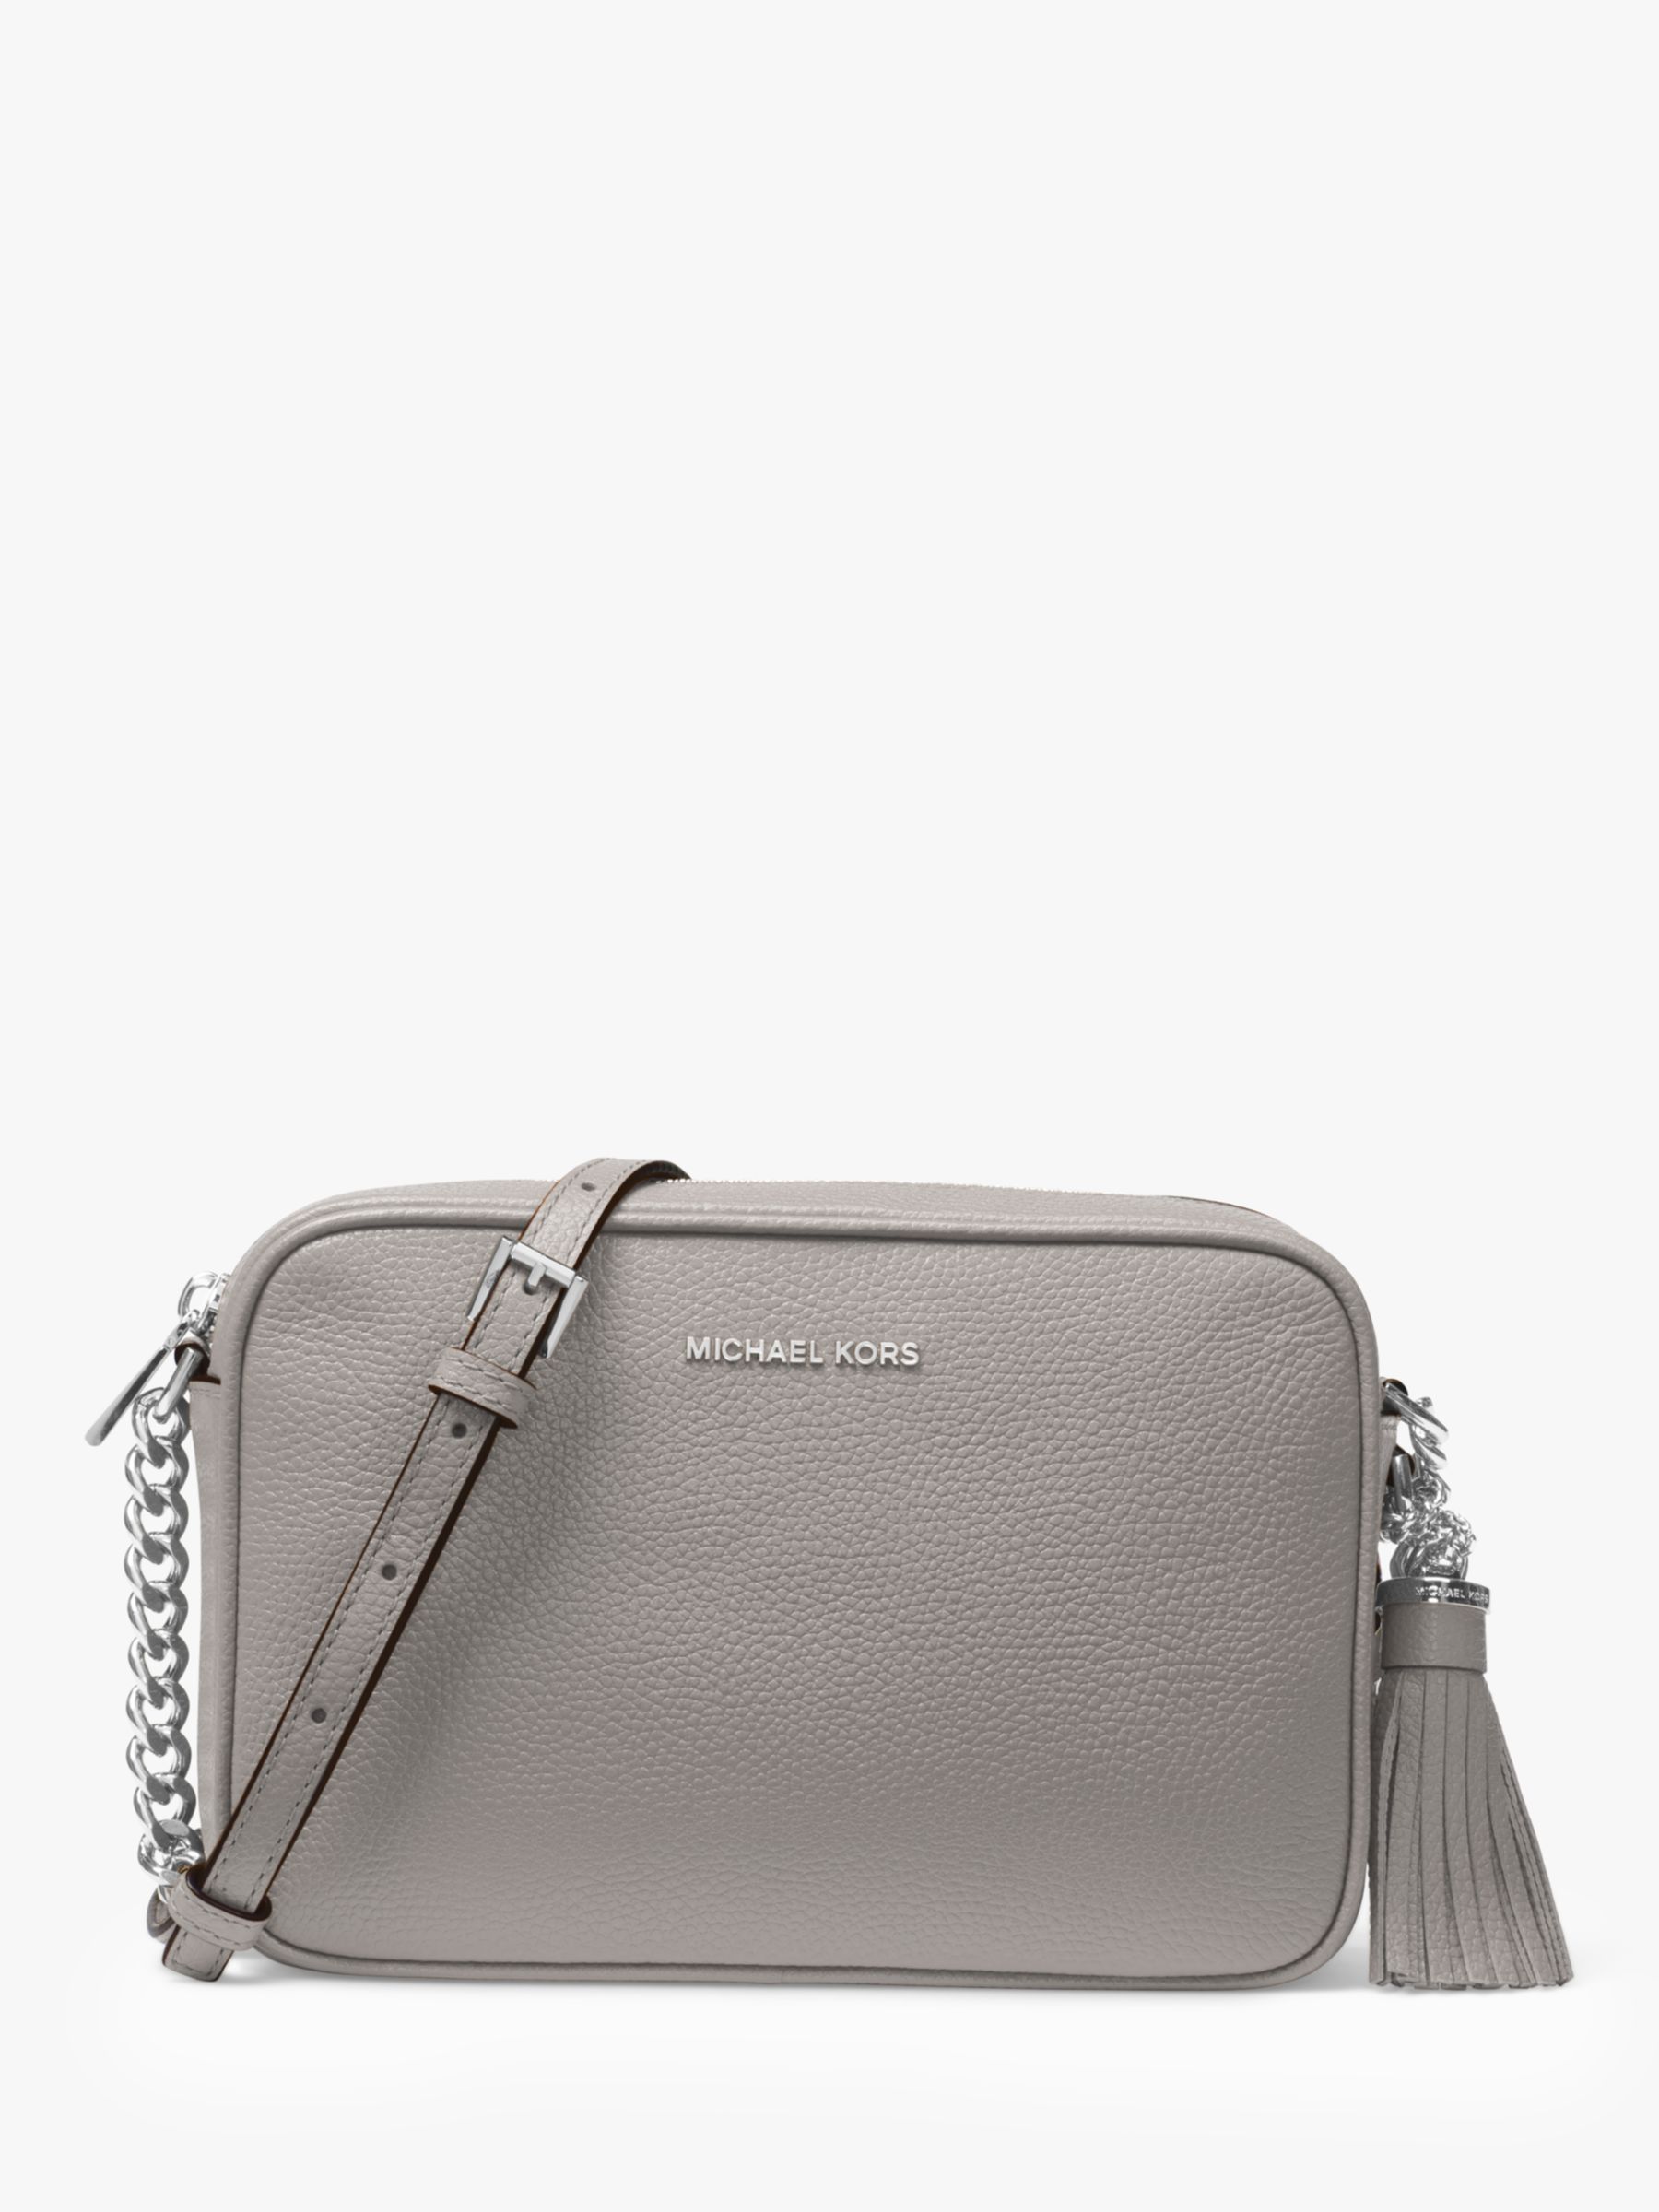 Grey Michael Kors Handbags, Bags 